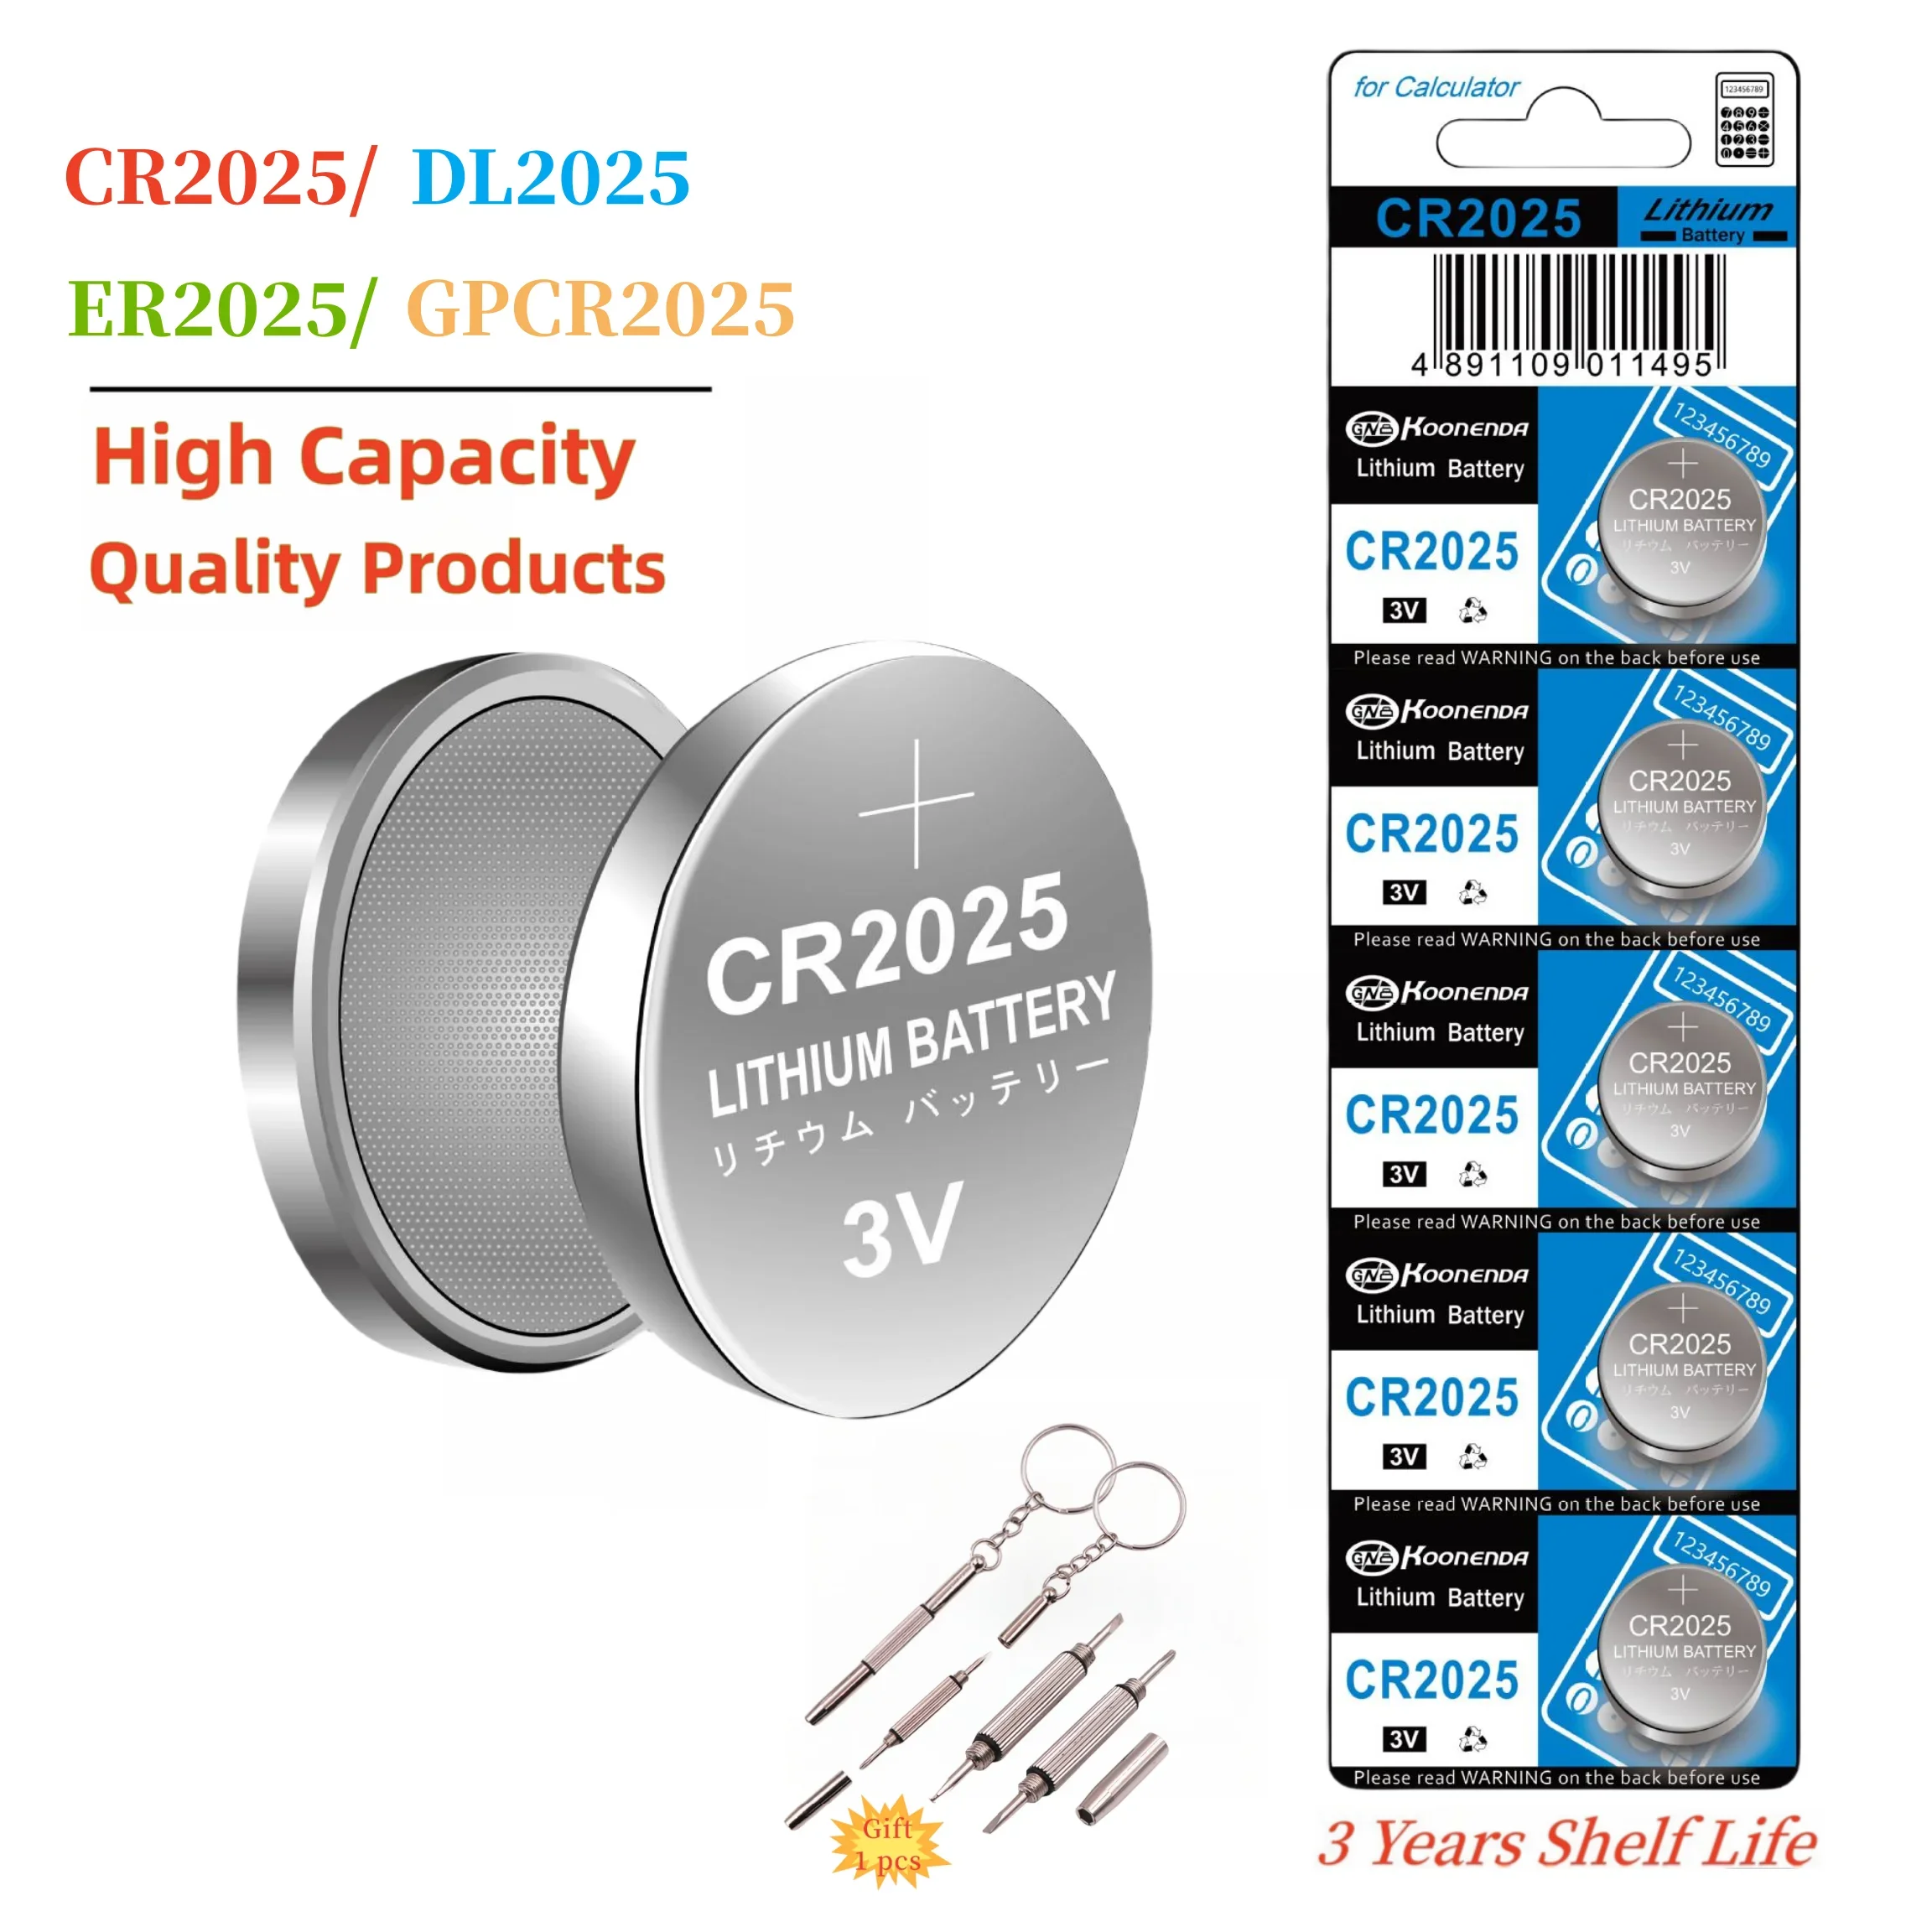 CR2025 3V סוללת ליתיום כפתור מטבע תא הסוללות אידיאלי עבור Fob מפתח שעונים מחשבונים מדחומים Glucometers ועוד עם מתנה